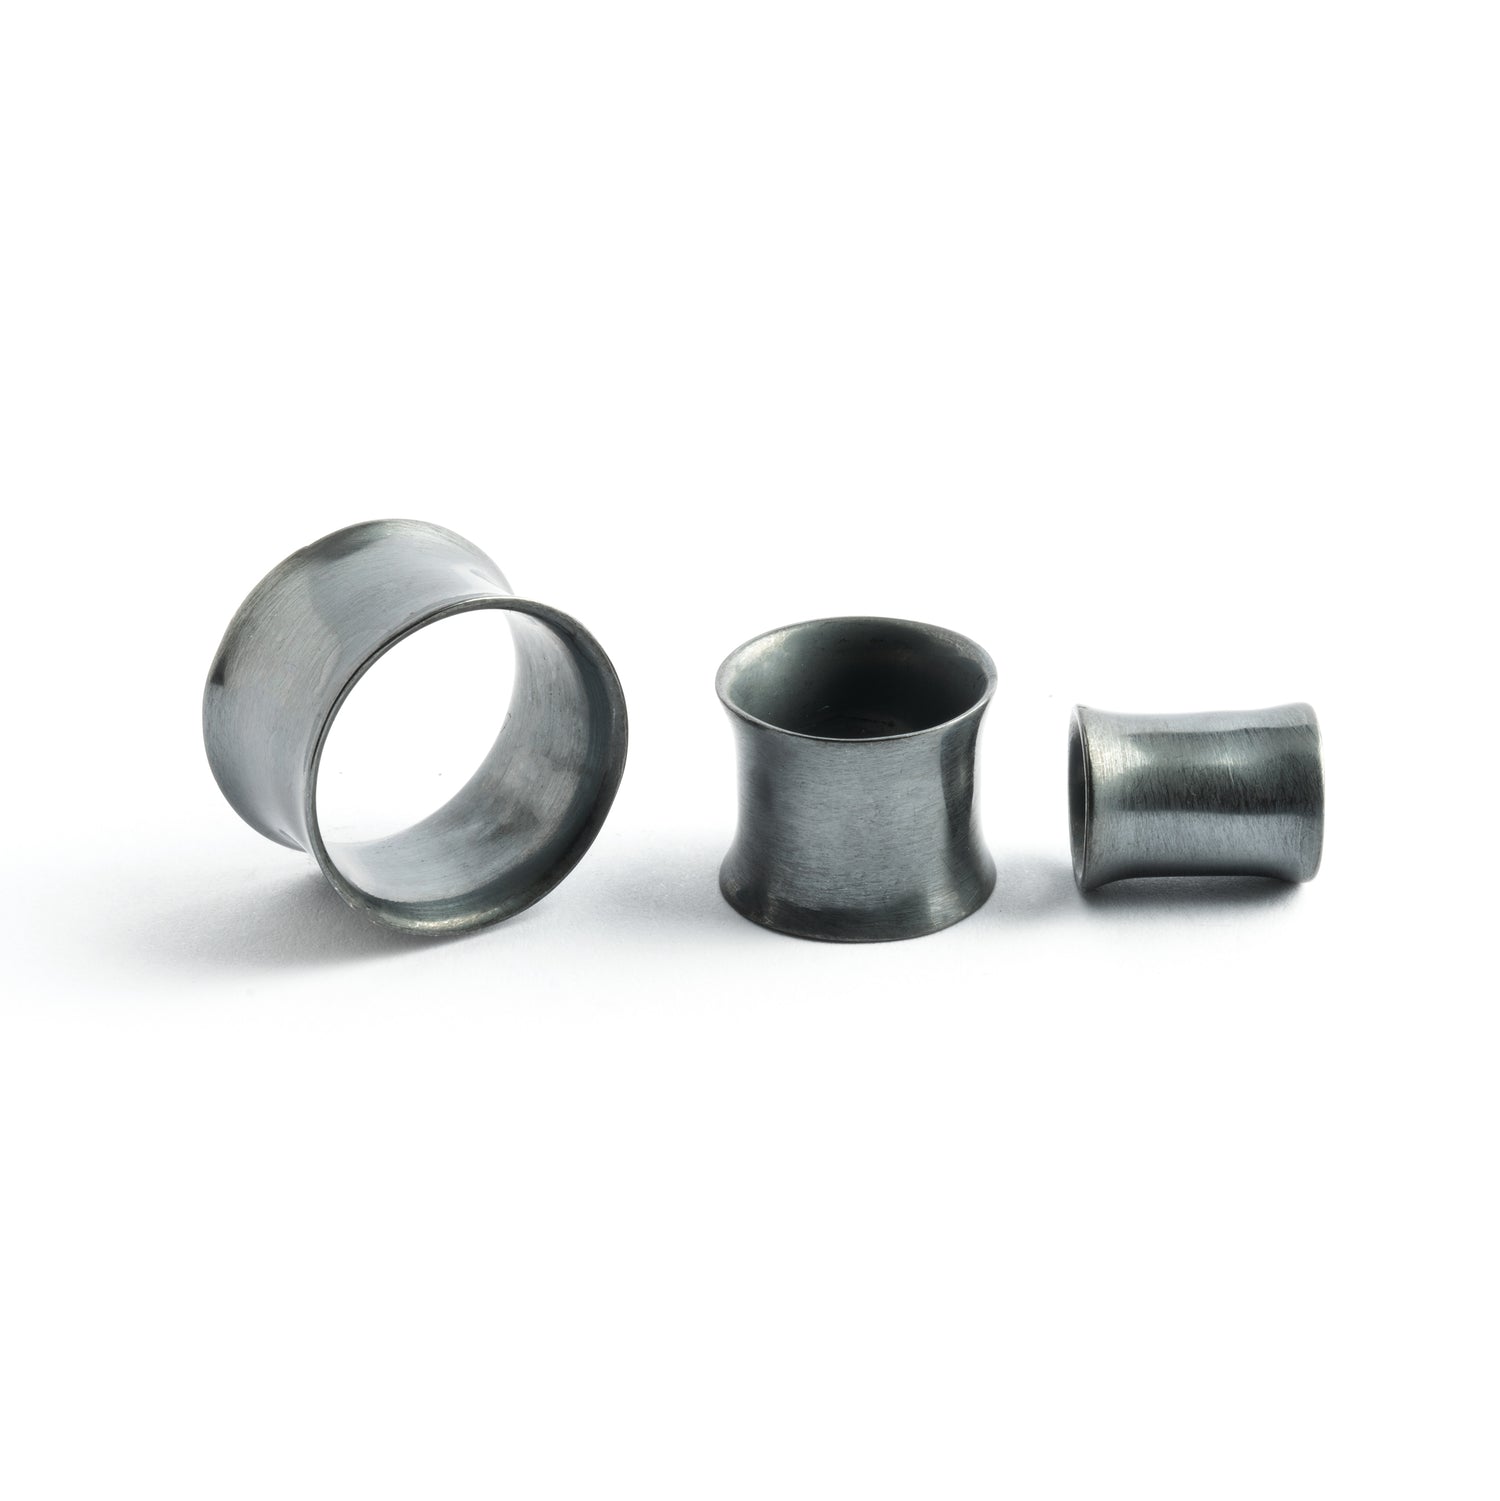  minimalistic black Silver ear tunnels